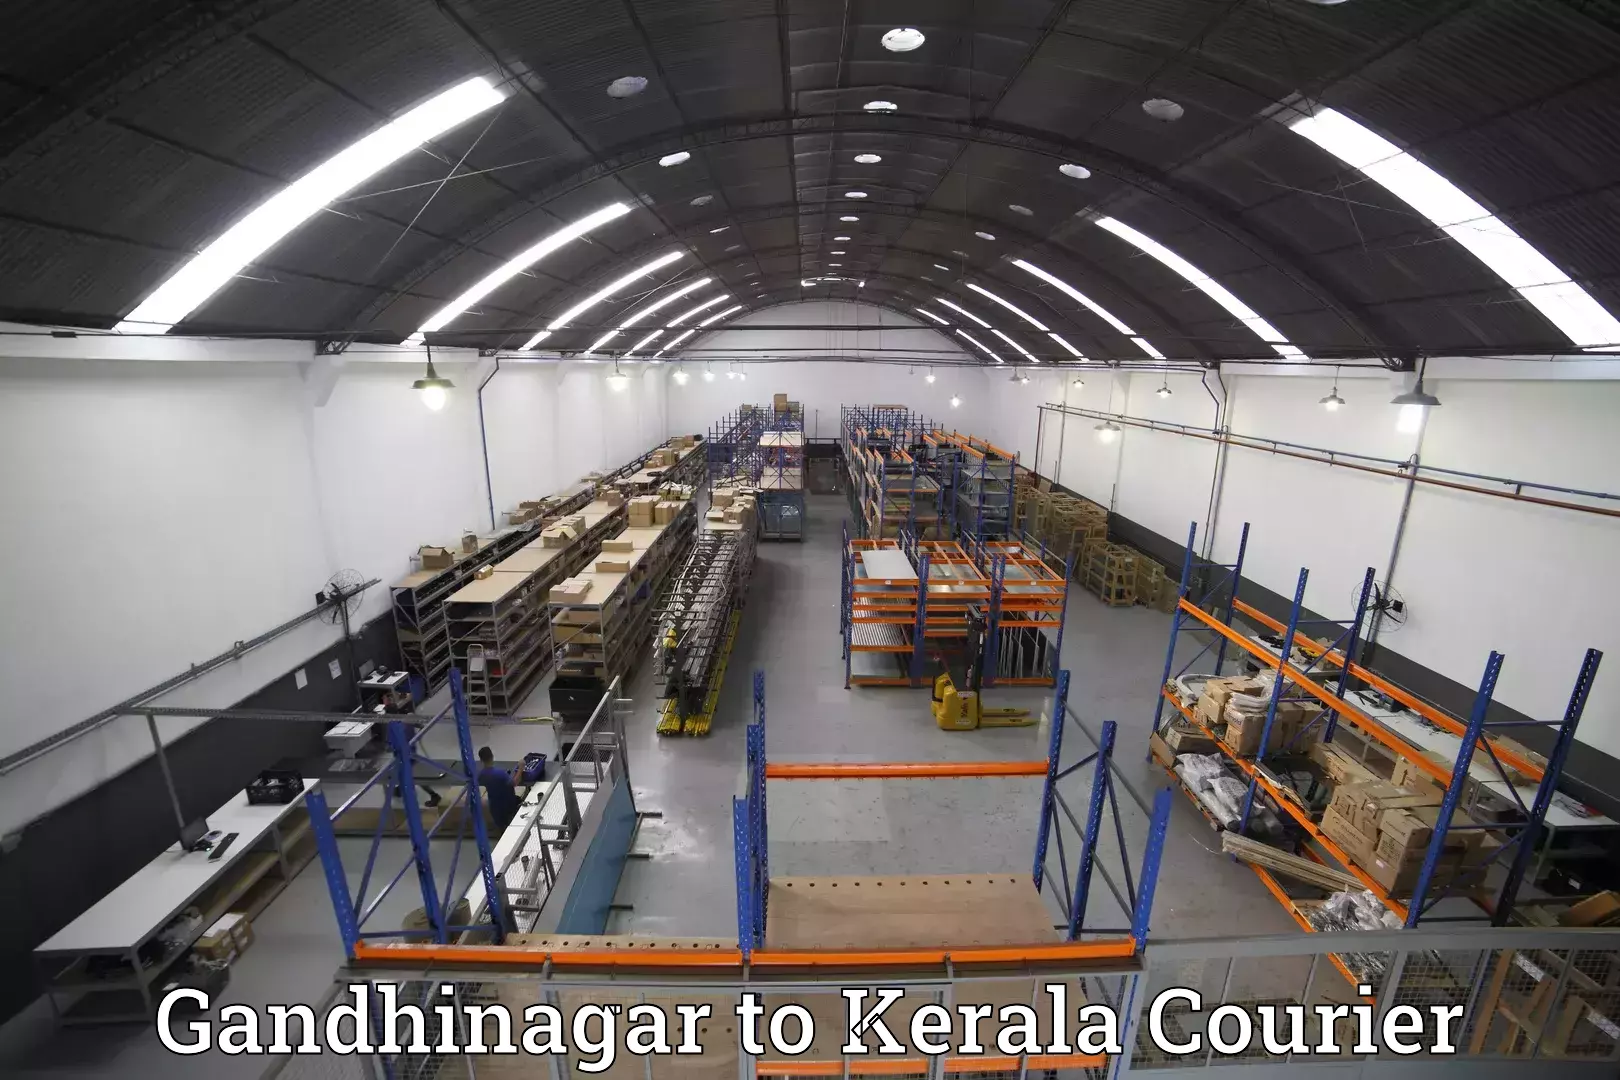 Personal effects shipping in Gandhinagar to Kerala